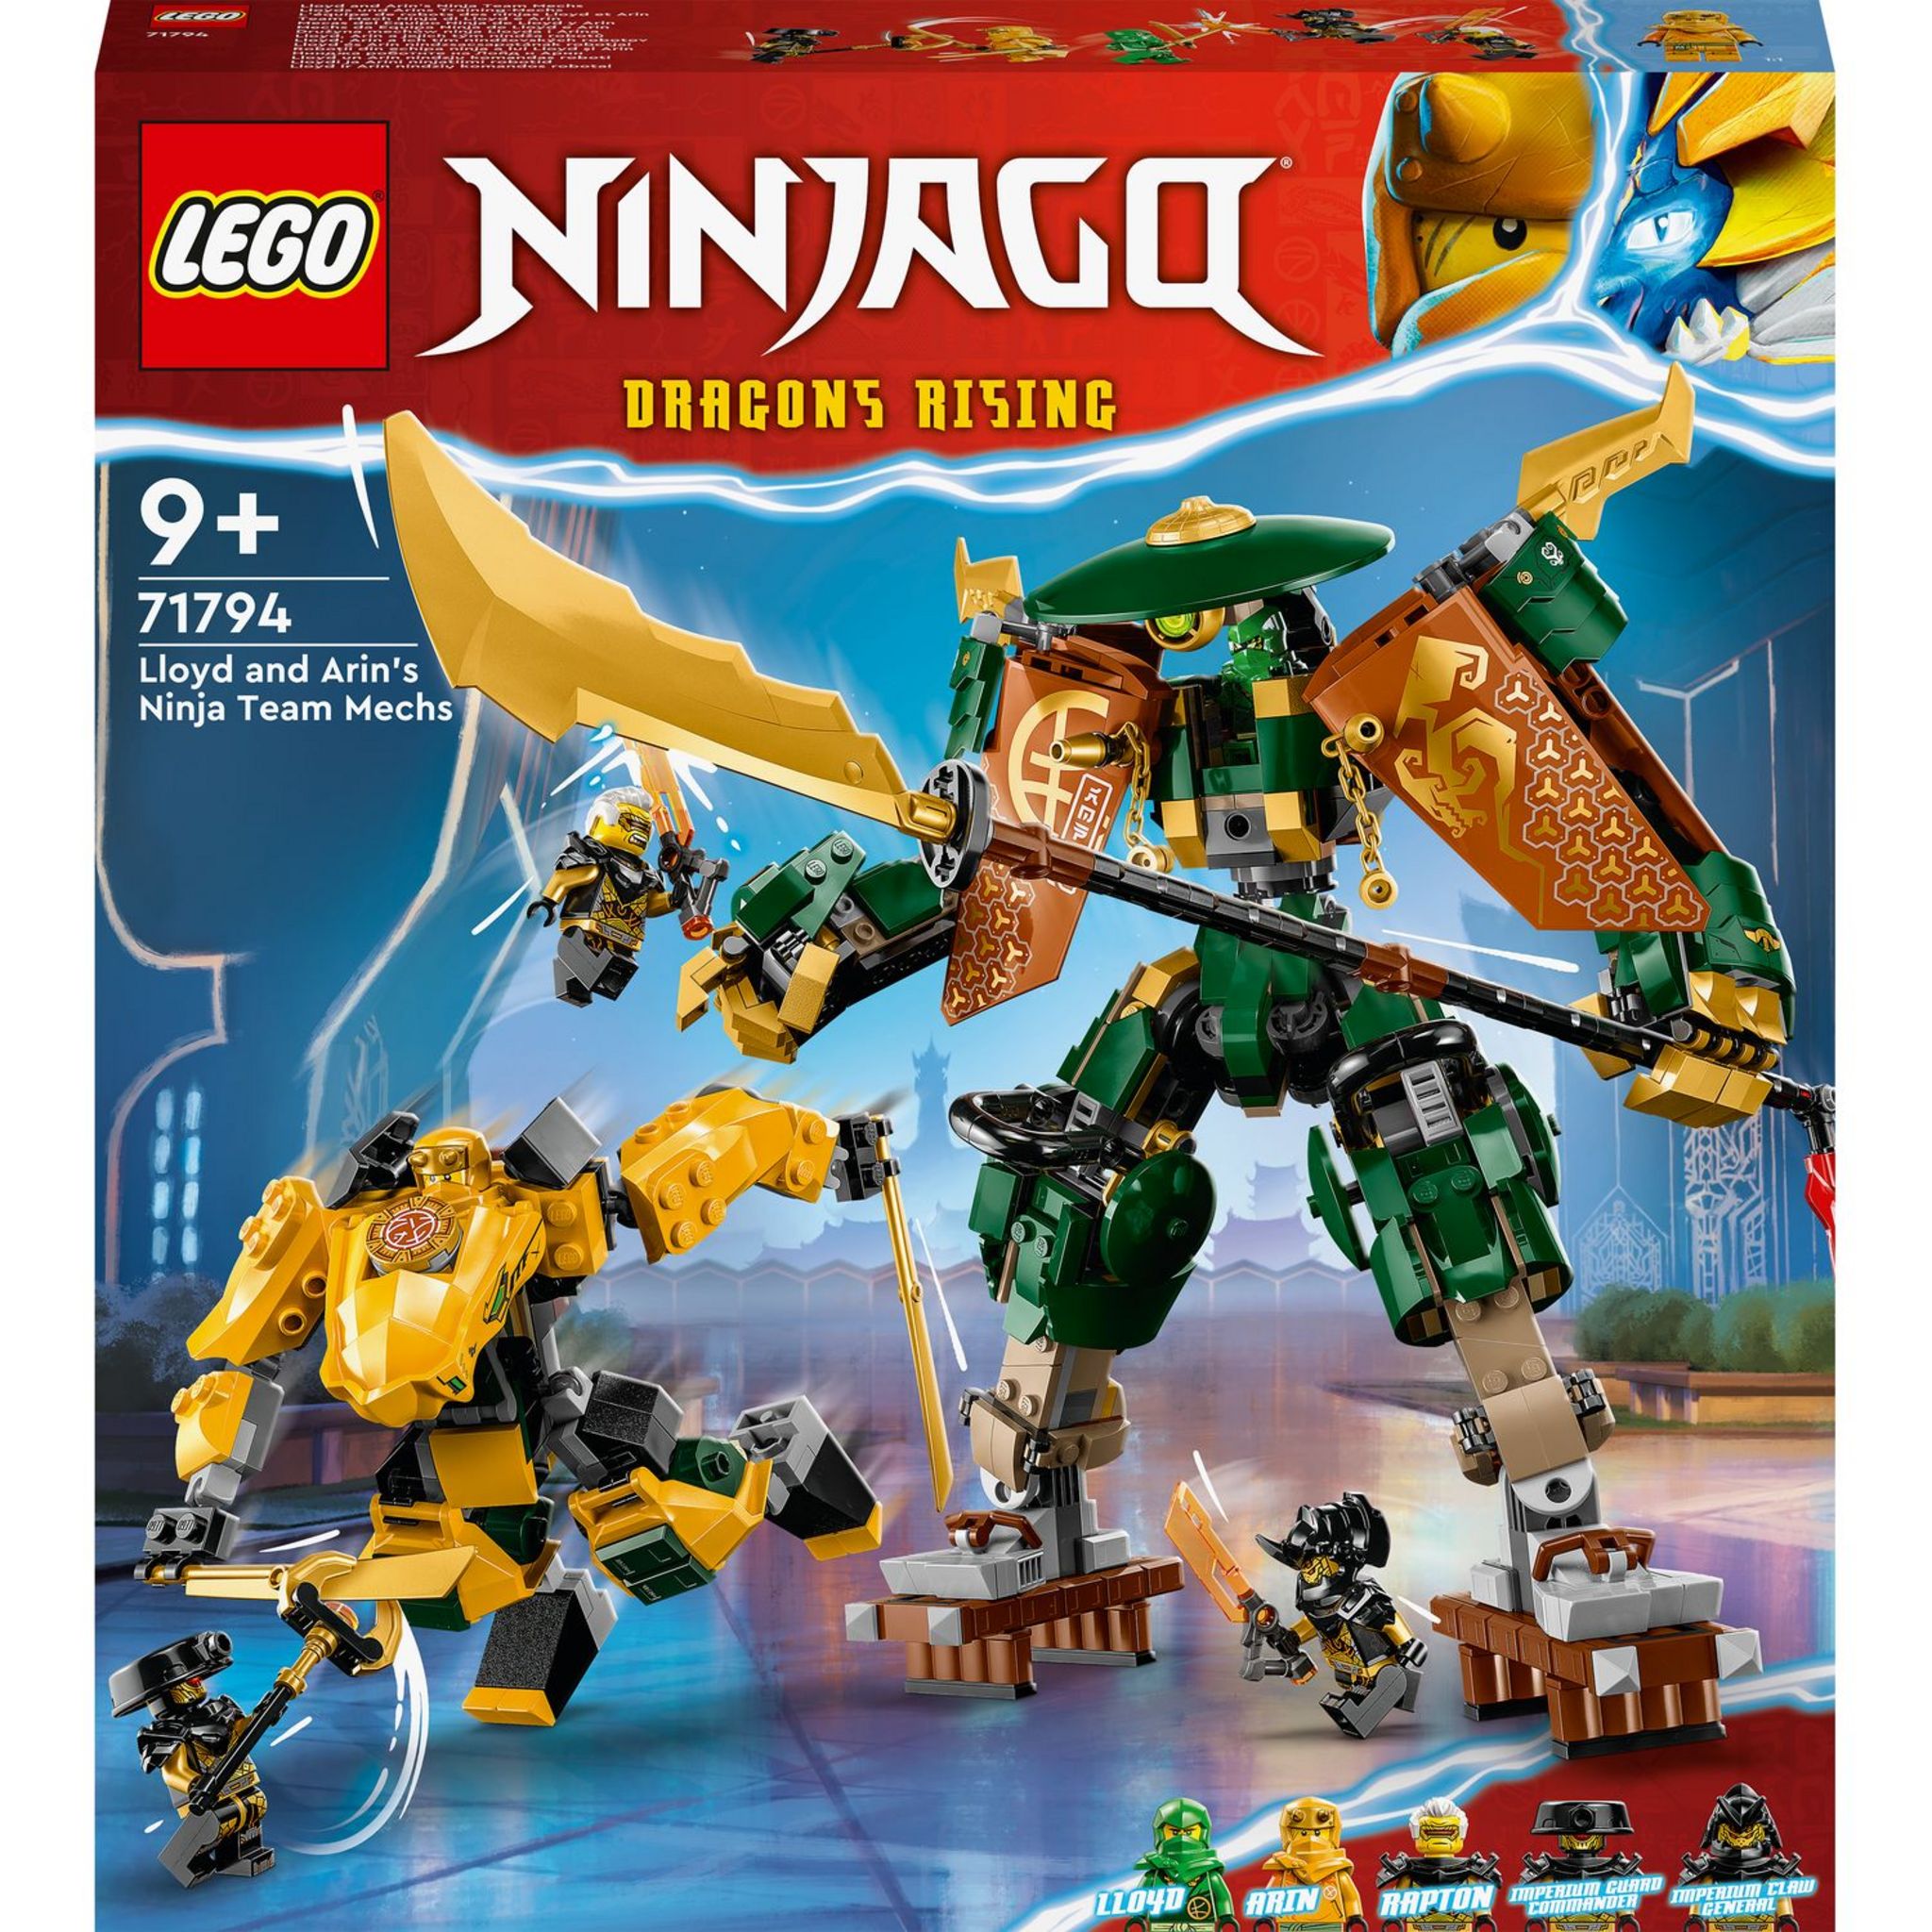 LEGO® 71806 - Le robot élémentaire de la terre de Cole - LEGO